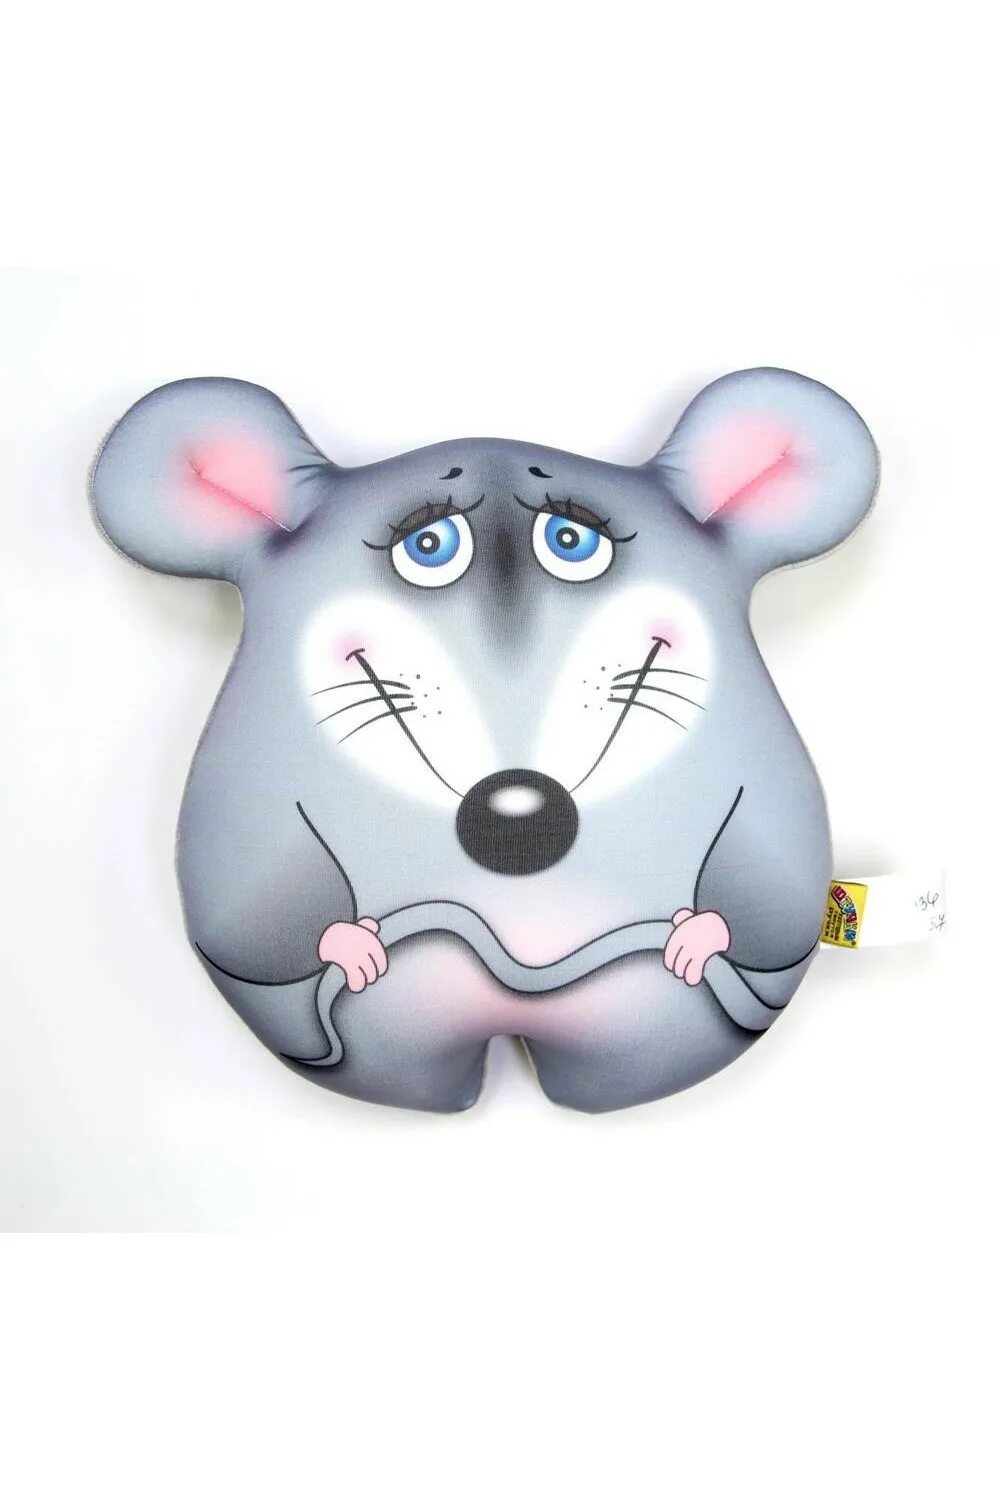 Мышка антистресс. Мышка антистресс игрушка. Подушка антистресс мышка. Игрушка антистресс крыса. Мягкая игрушка крыса антистресс.